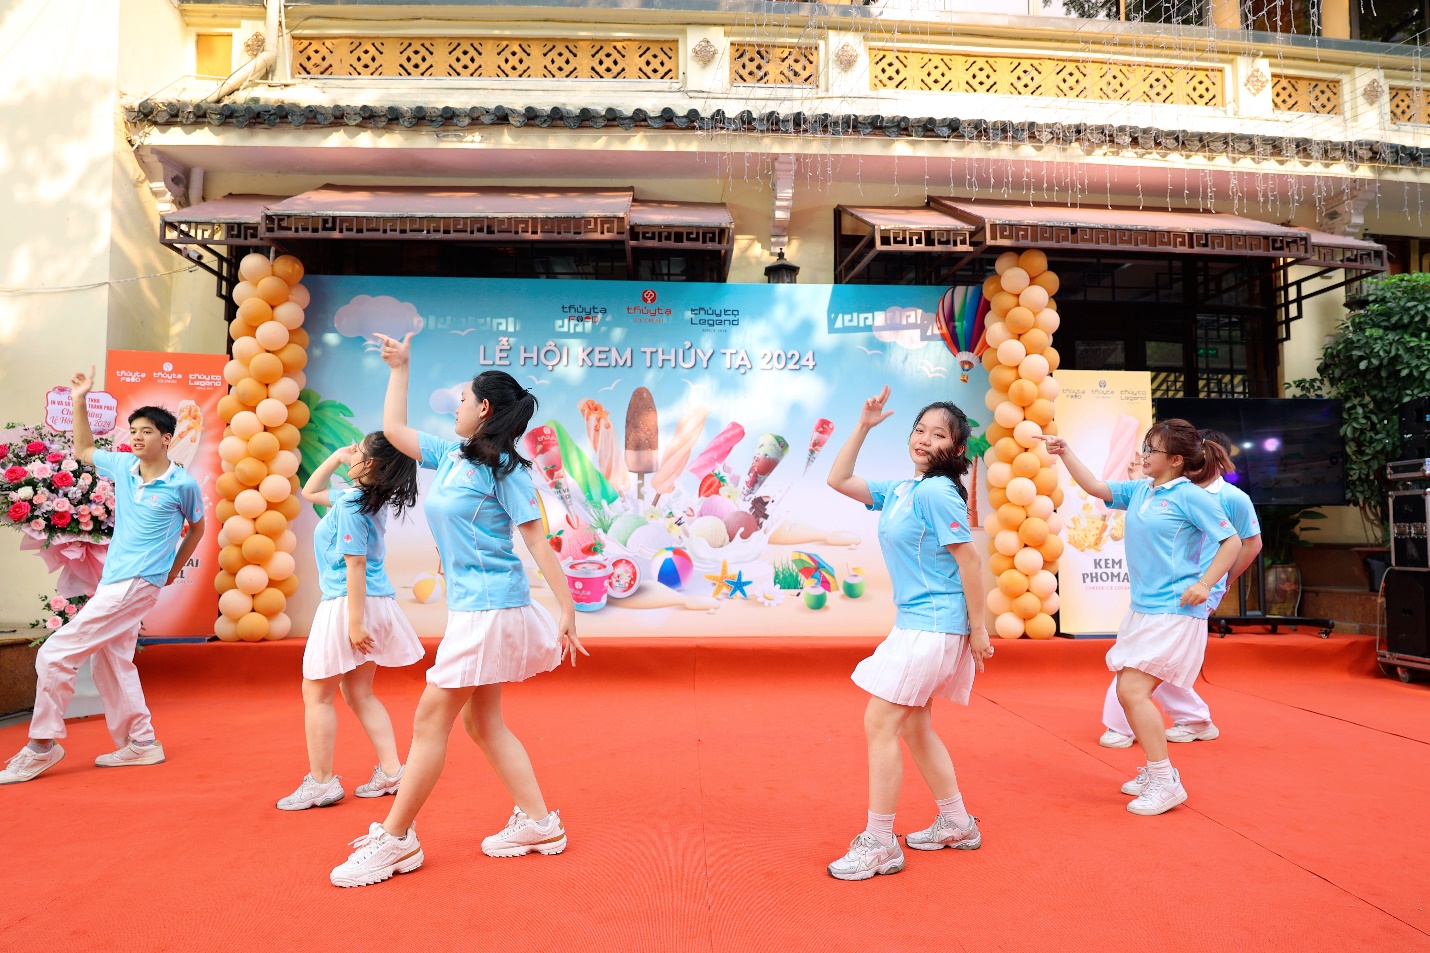 Kem Thủy Tạ ra mắt 2 vị kem mới tại Lễ hội 2024- Ảnh 2.